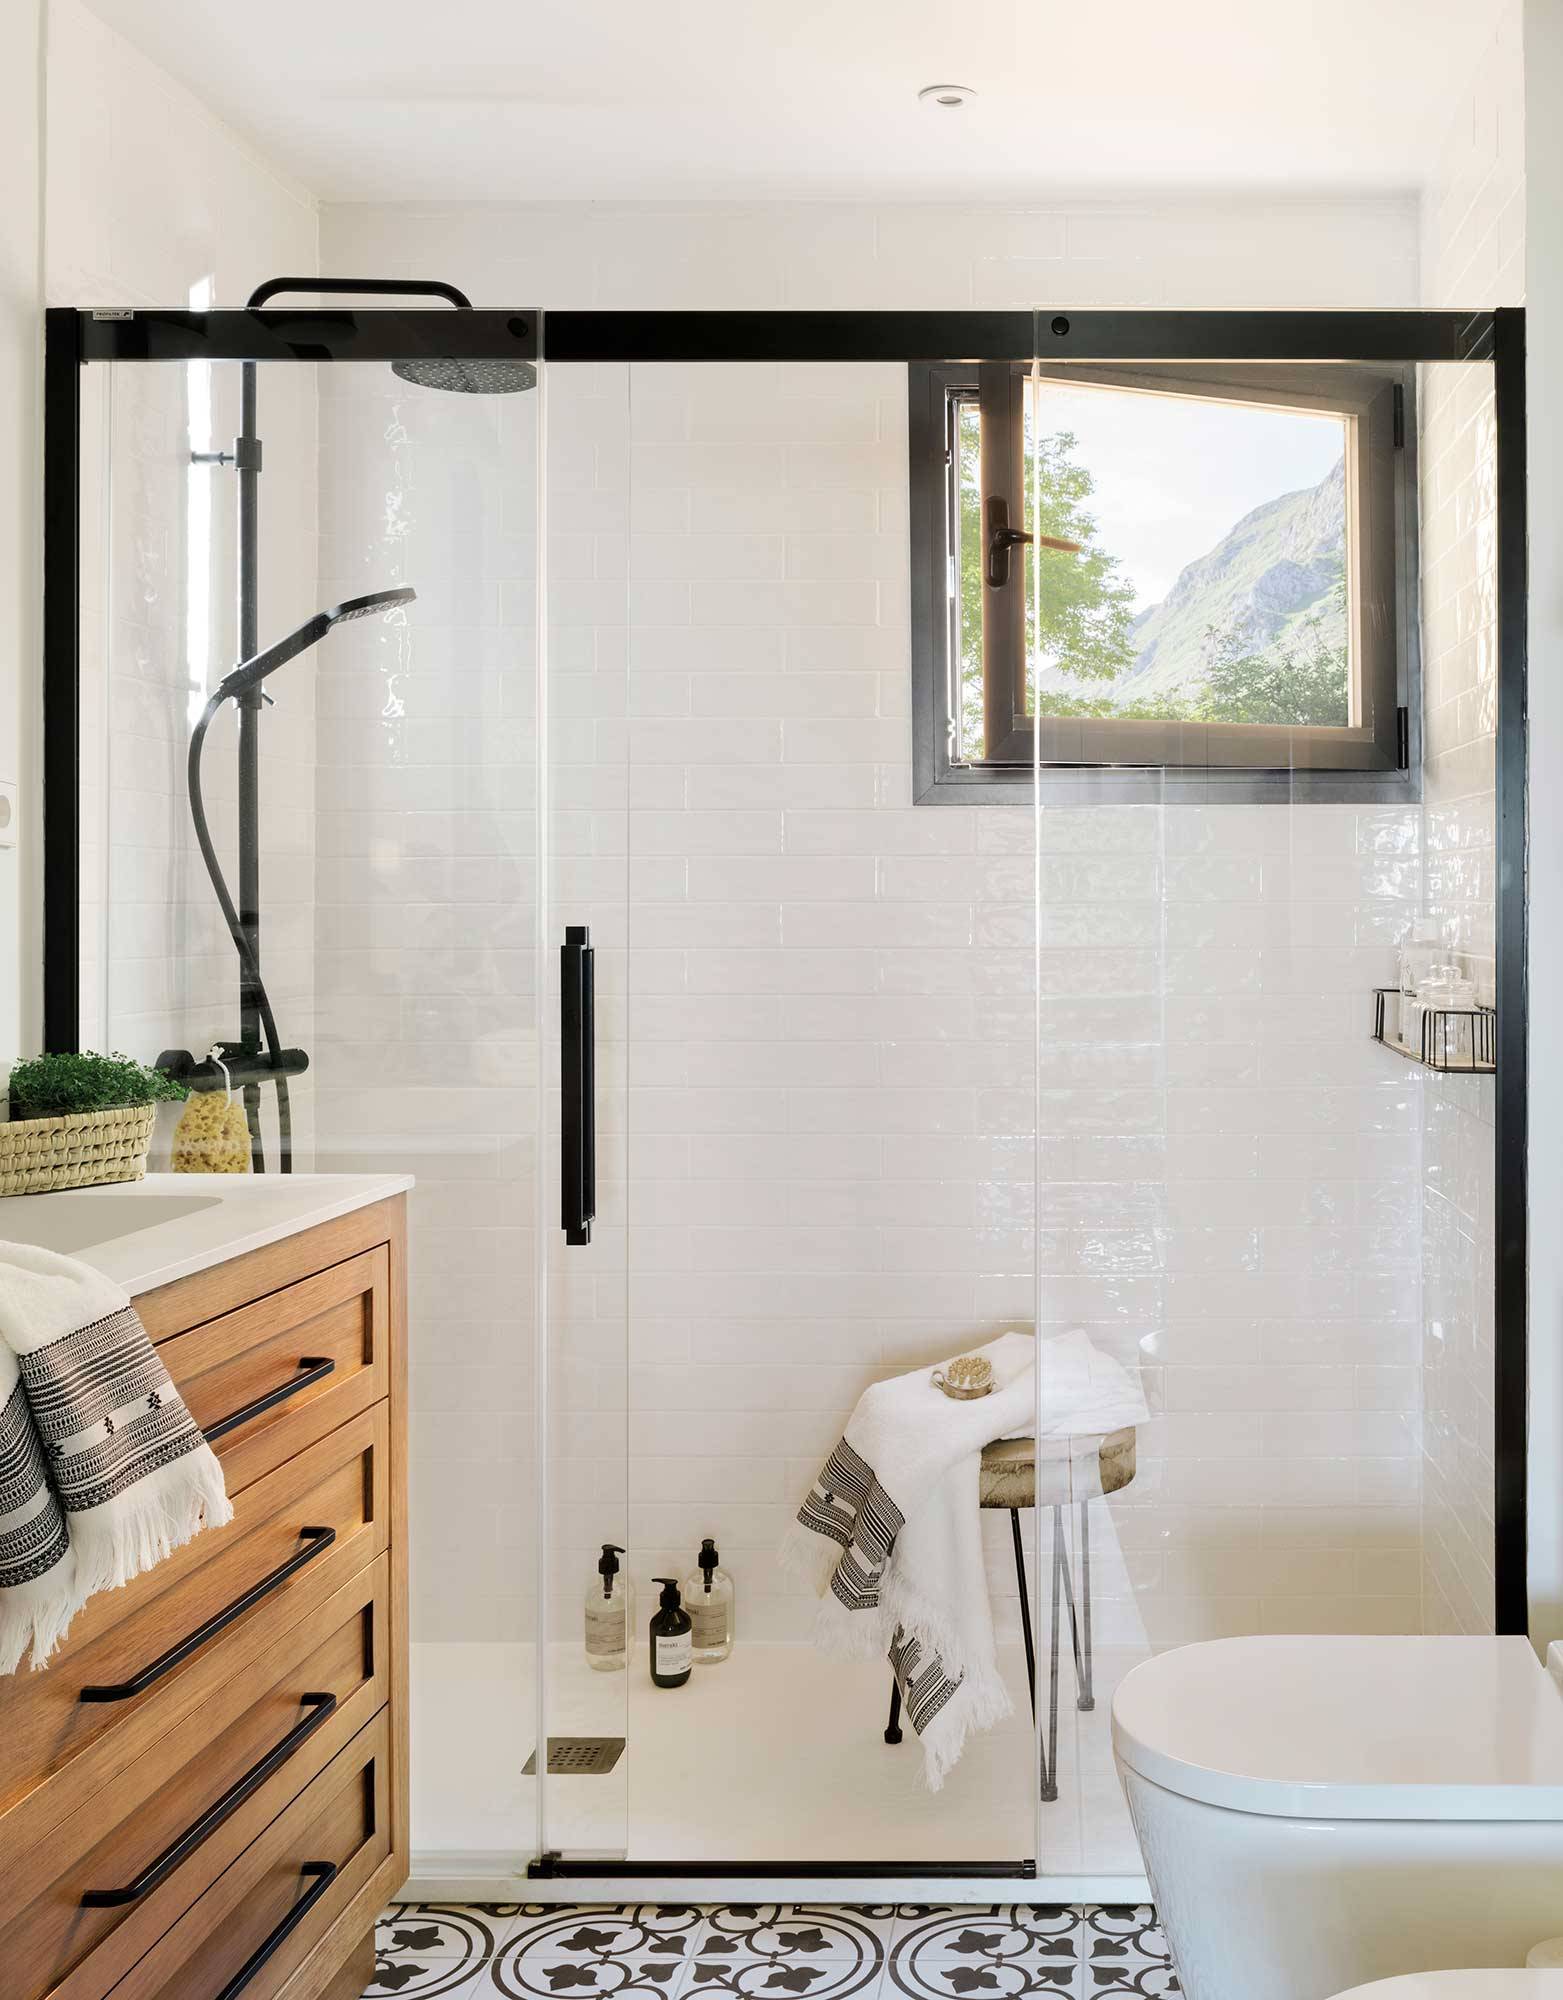 Baño moderno con ducha XL en blanco y negro 00510673